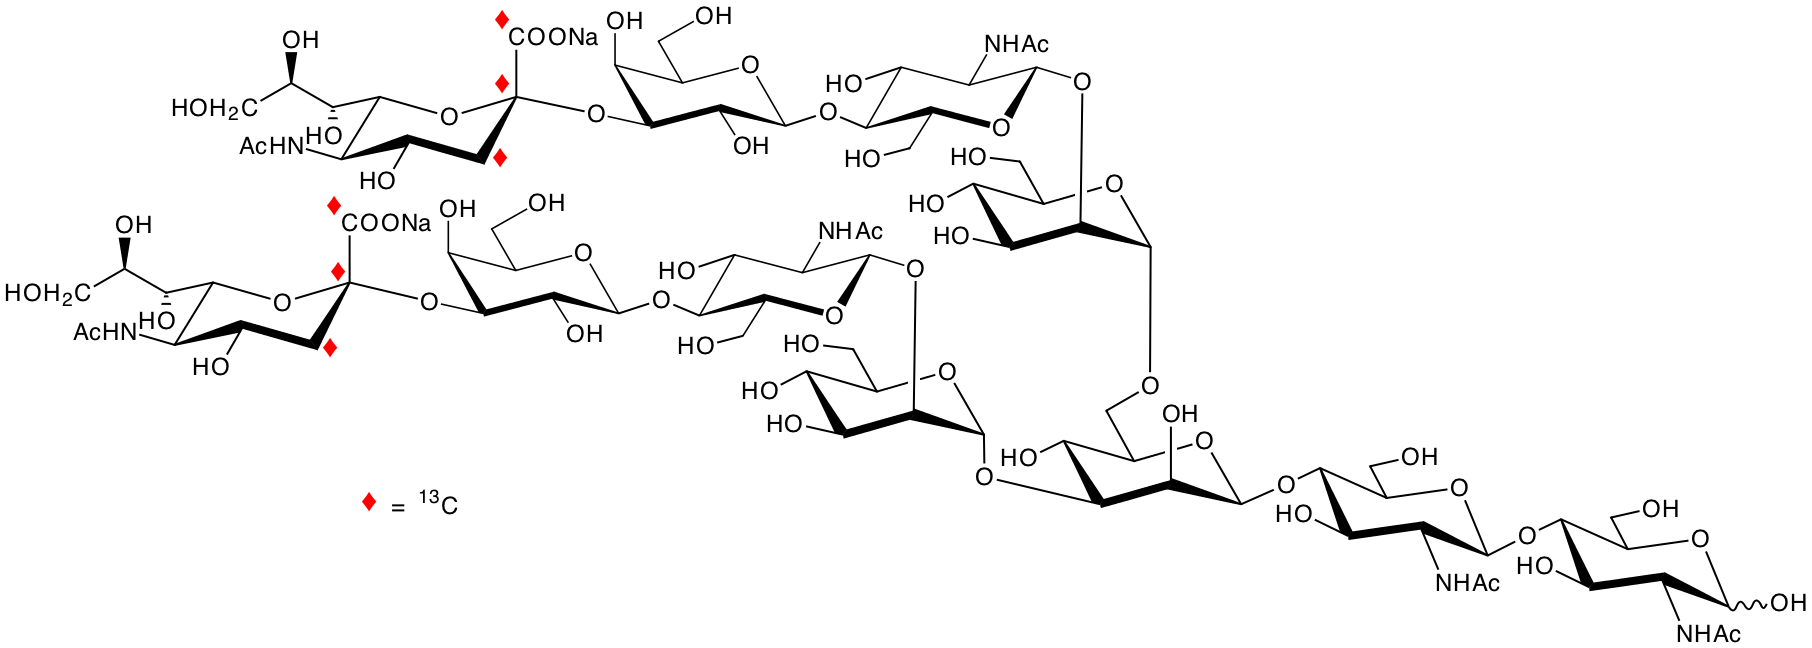 structure of [1,2,3-13C3]NeuNAcalpha2,3Galbeta1,4GlcNAcbeta1,2Manalpha1,3([1,2,3-13C3]NeuNAcalpha2,3Galbeta1,4GlcNAc6beta1,2Manalpha1,6)Manbeta1,4GlcNAcbeta1,4GlcNAc disodium salt